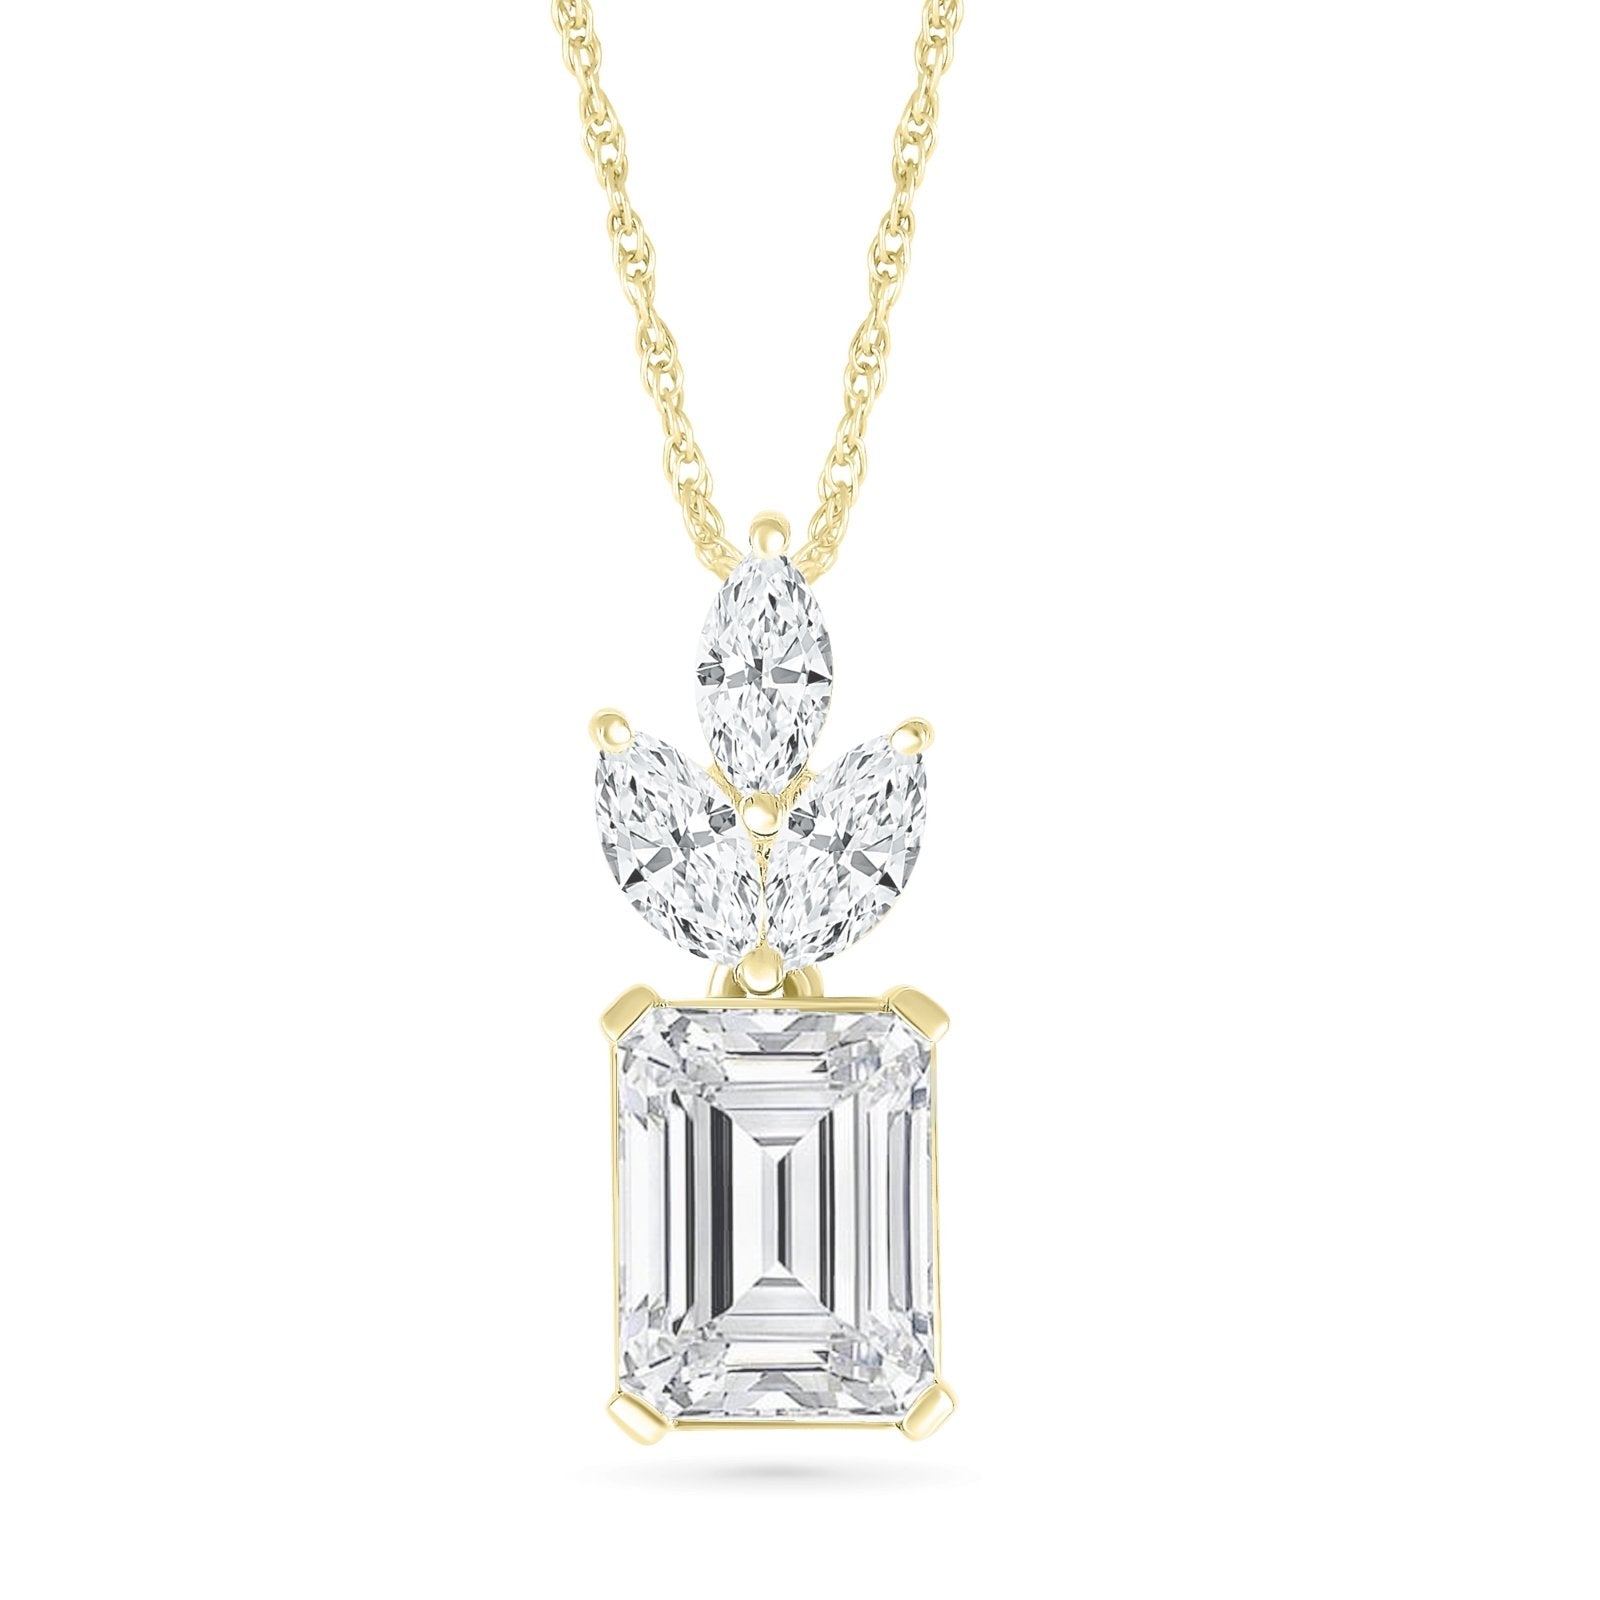 White Sapphire Pendant with Crown Necklaces Estella Collection #product_description# 32728 10k Birthstone Birthstone Jewelry #tag4# #tag5# #tag6# #tag7# #tag8# #tag9# #tag10#